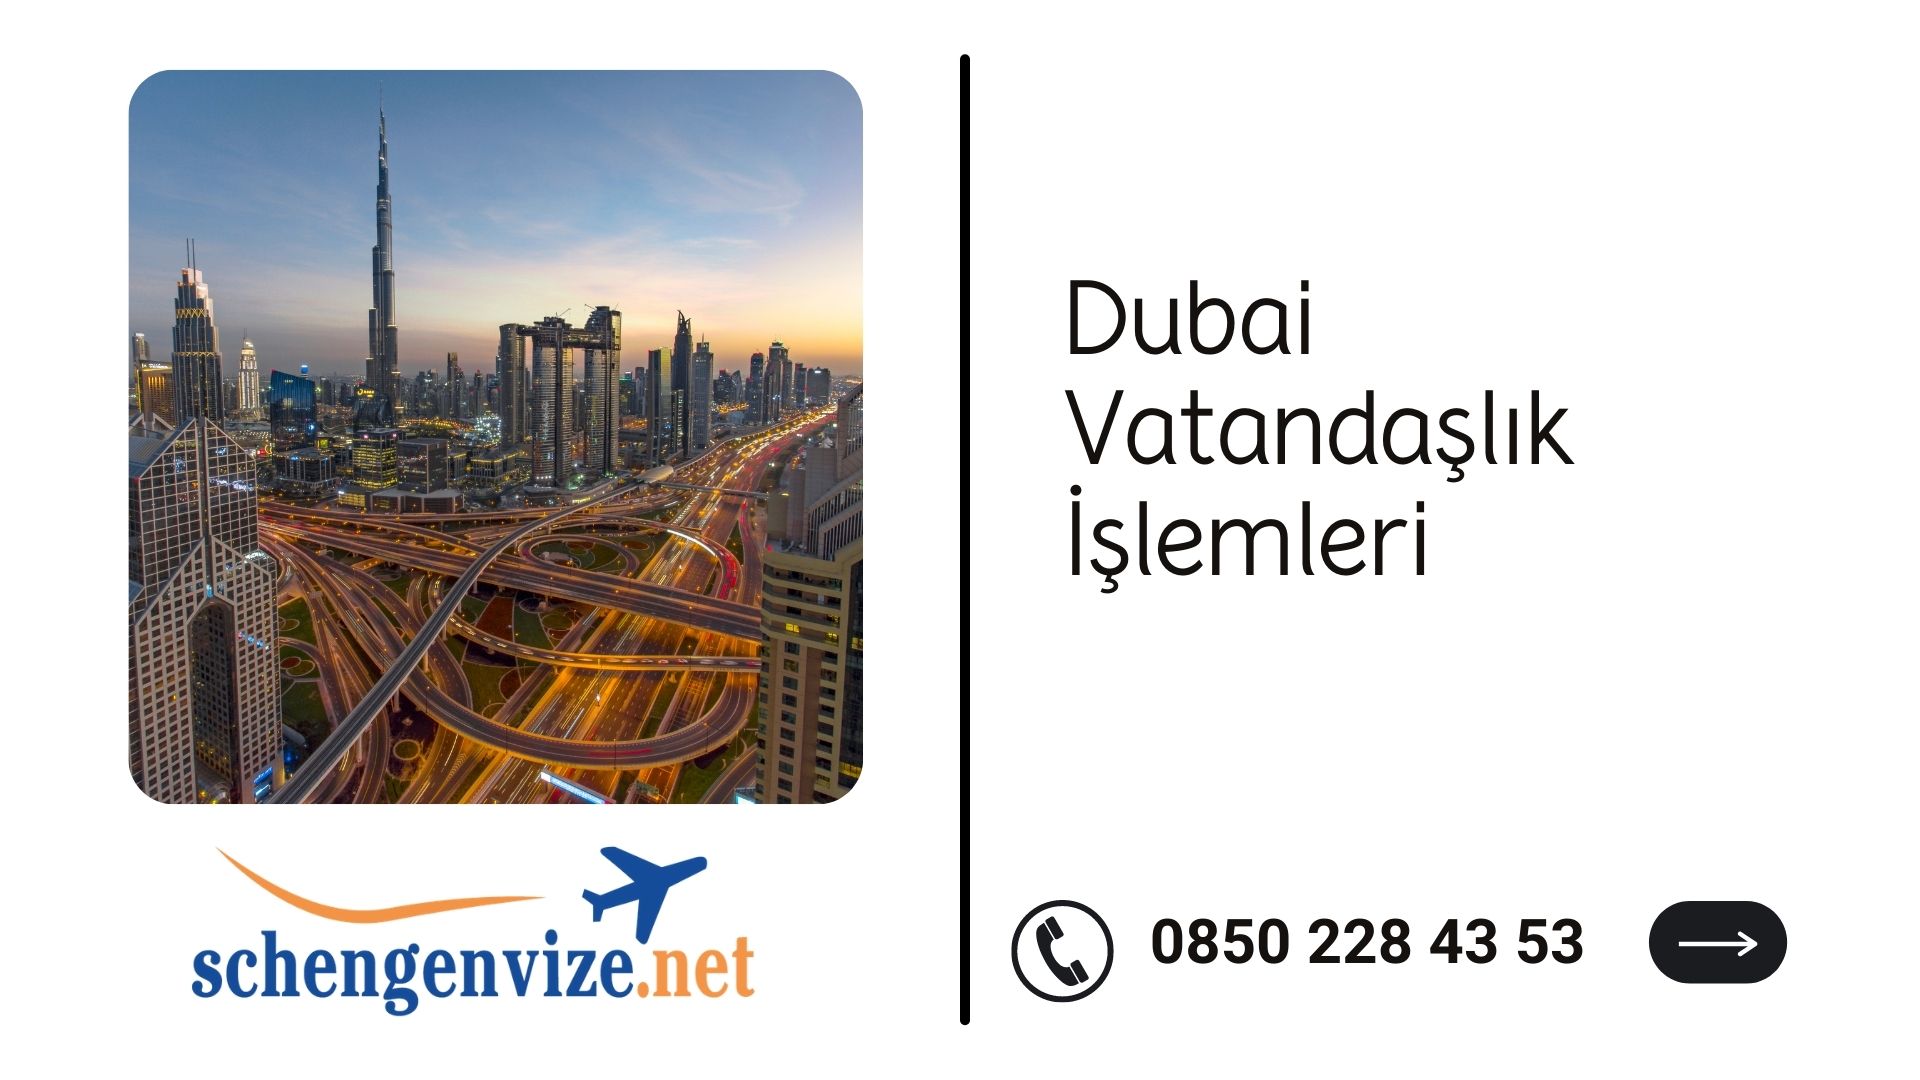 Dubai Vatandaşlık İşlemleri